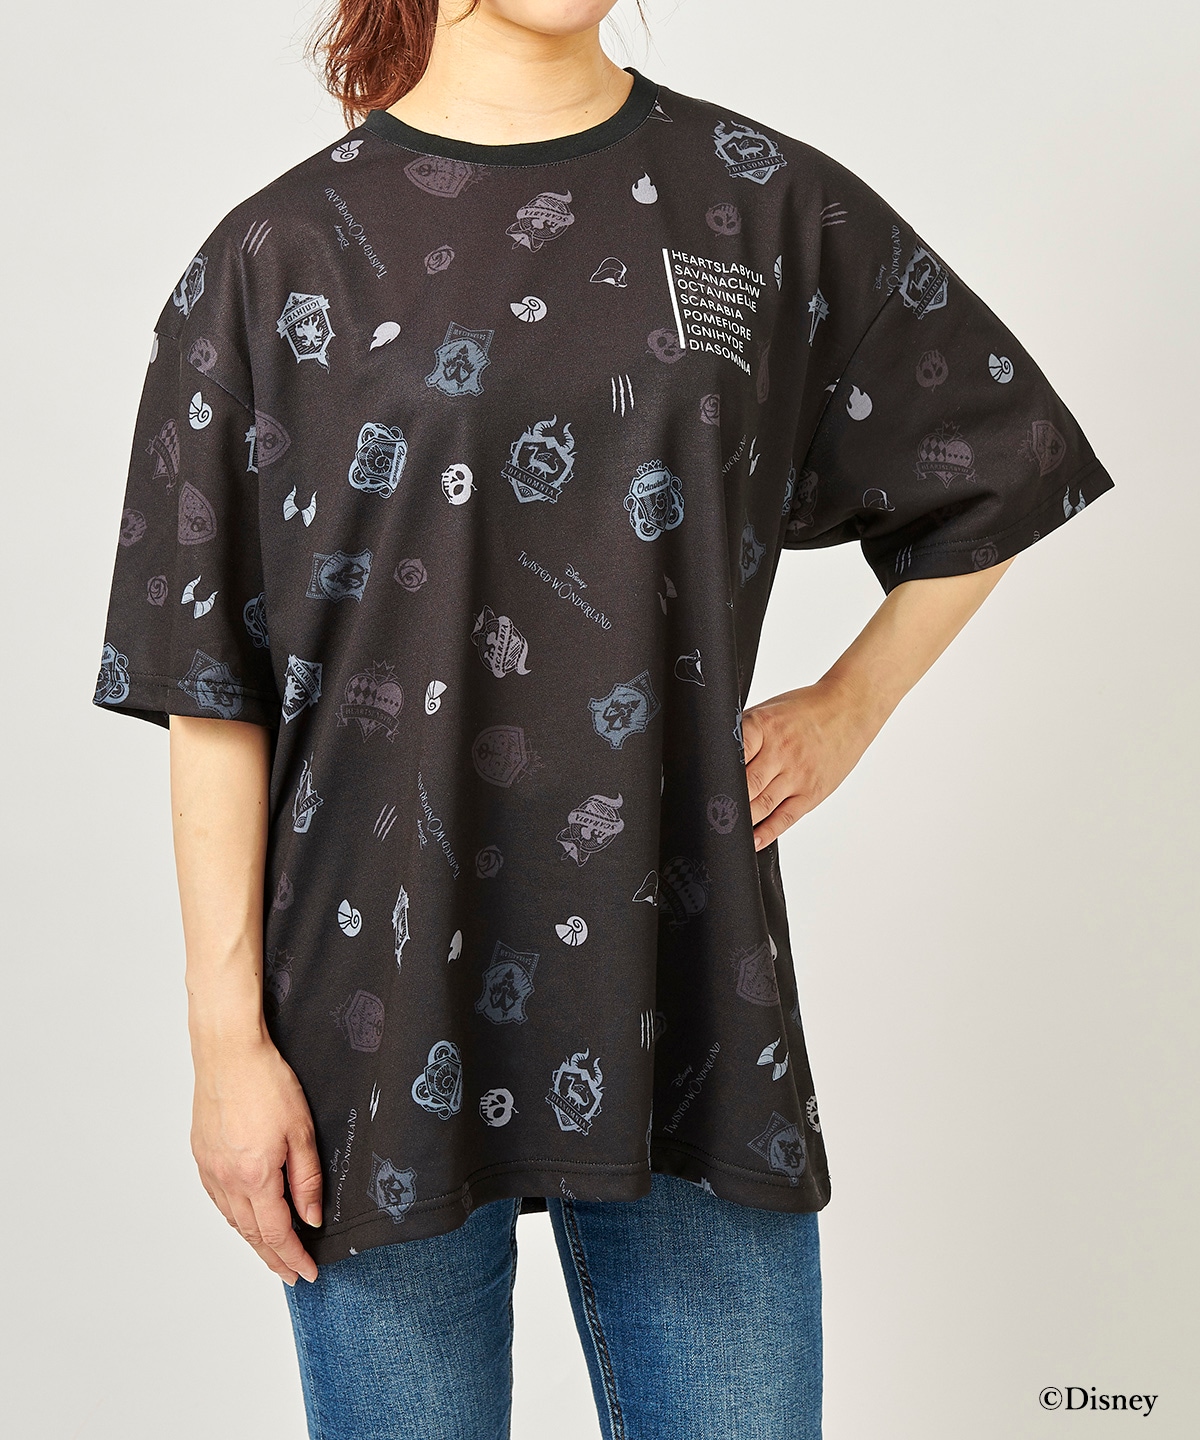 『ディズニー ツイステッドワンダーランド』バッグコレクション オリジナルデザインT シャツ